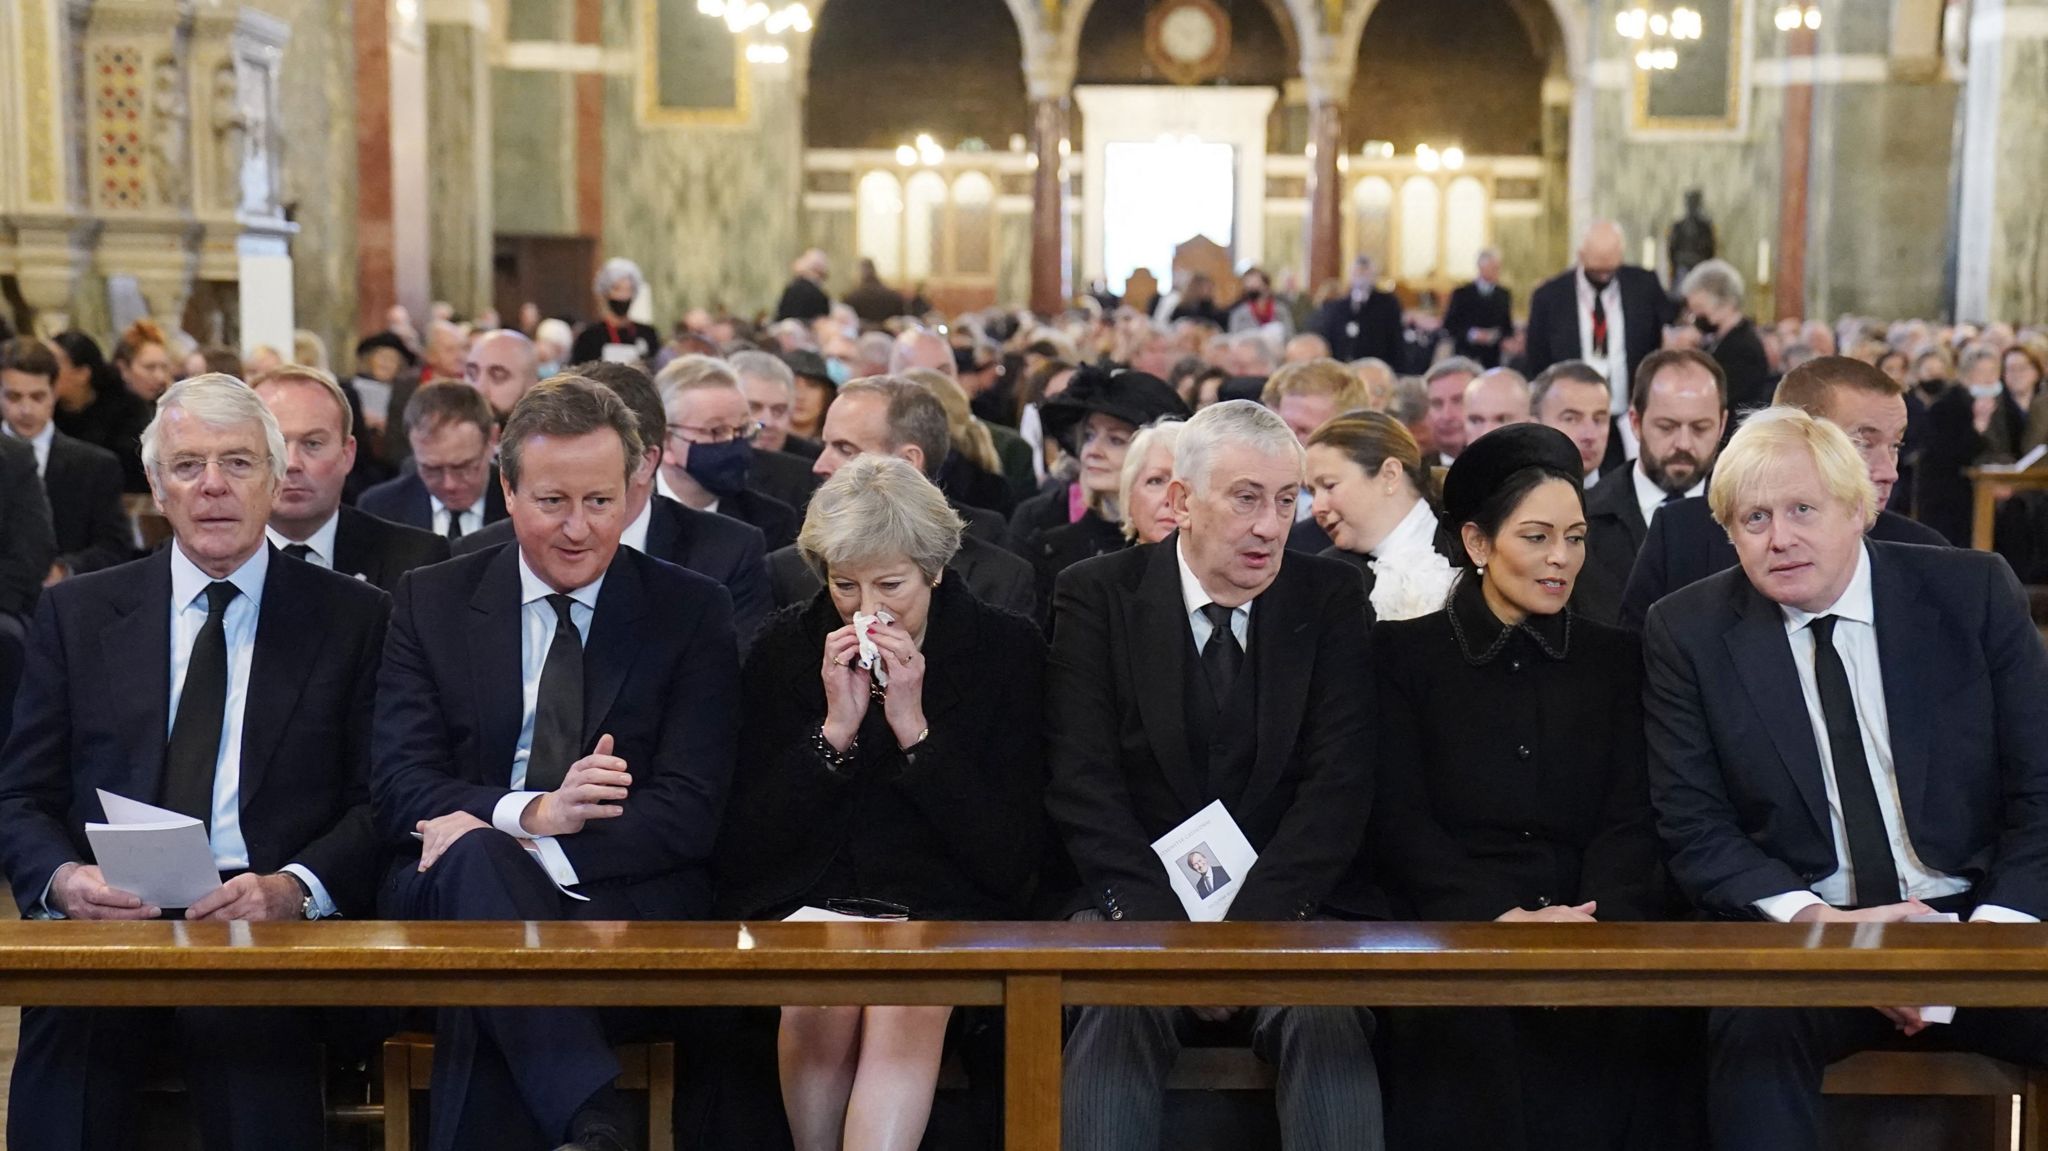 Sir John Major, David Cameron dhe Theresa May, Kryetari i Komunës Sir Lindsay Hoyle, Sekretarja e Brendshme Priti Patel dhe Kryeministri Boris Johnson në Katedralen Westminster